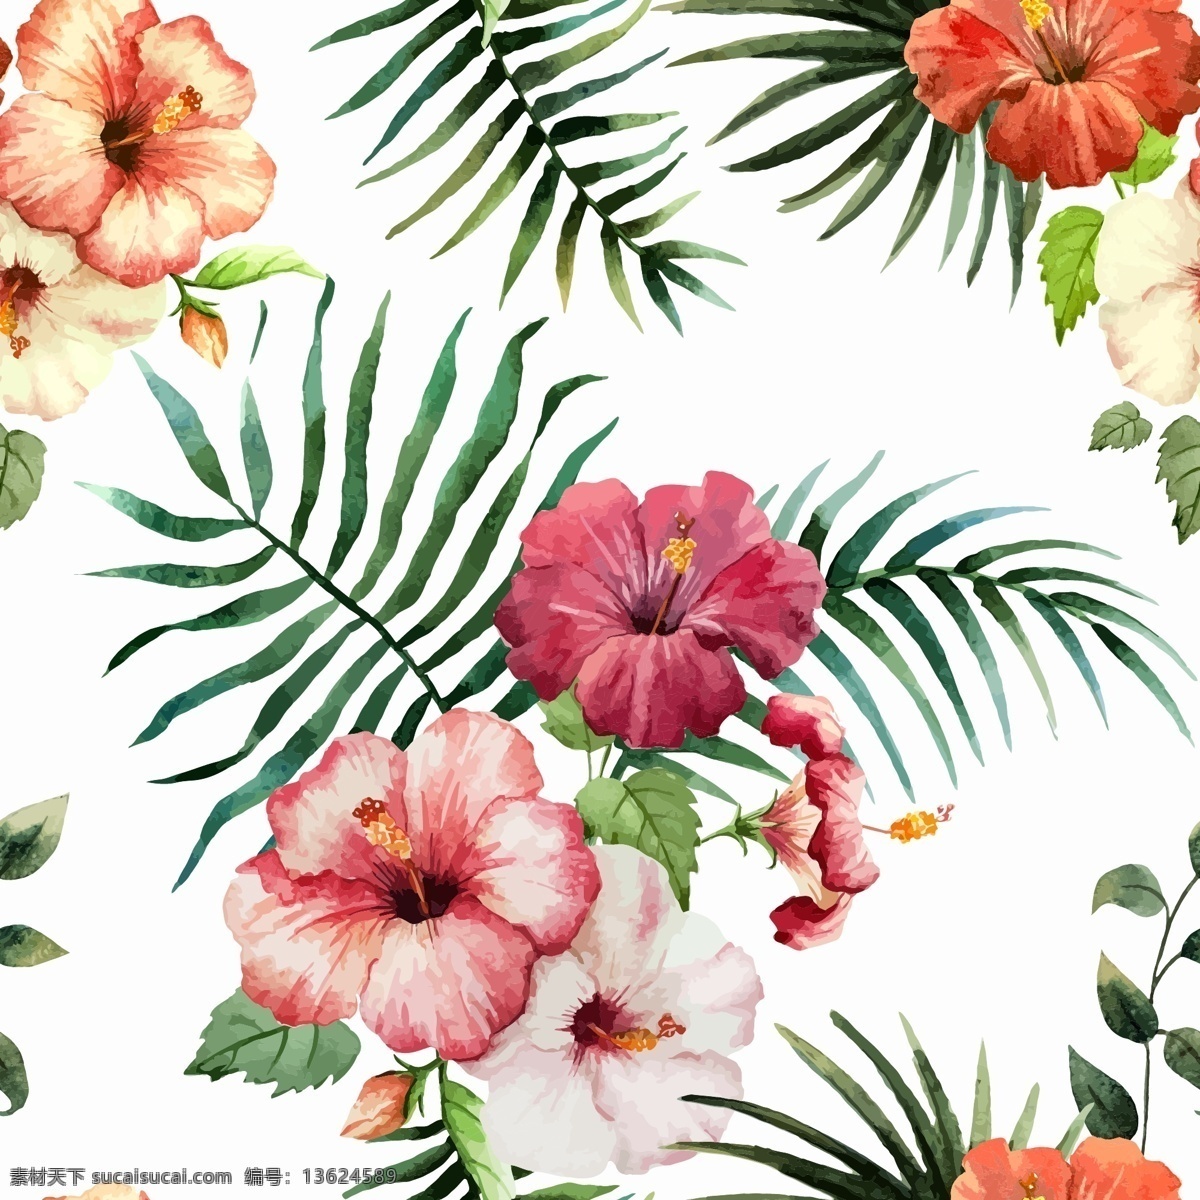 四方 连续 水彩 矢量图 热带 花卉 植物 四方连续 热带花卉 免费 底纹边框 背景底纹